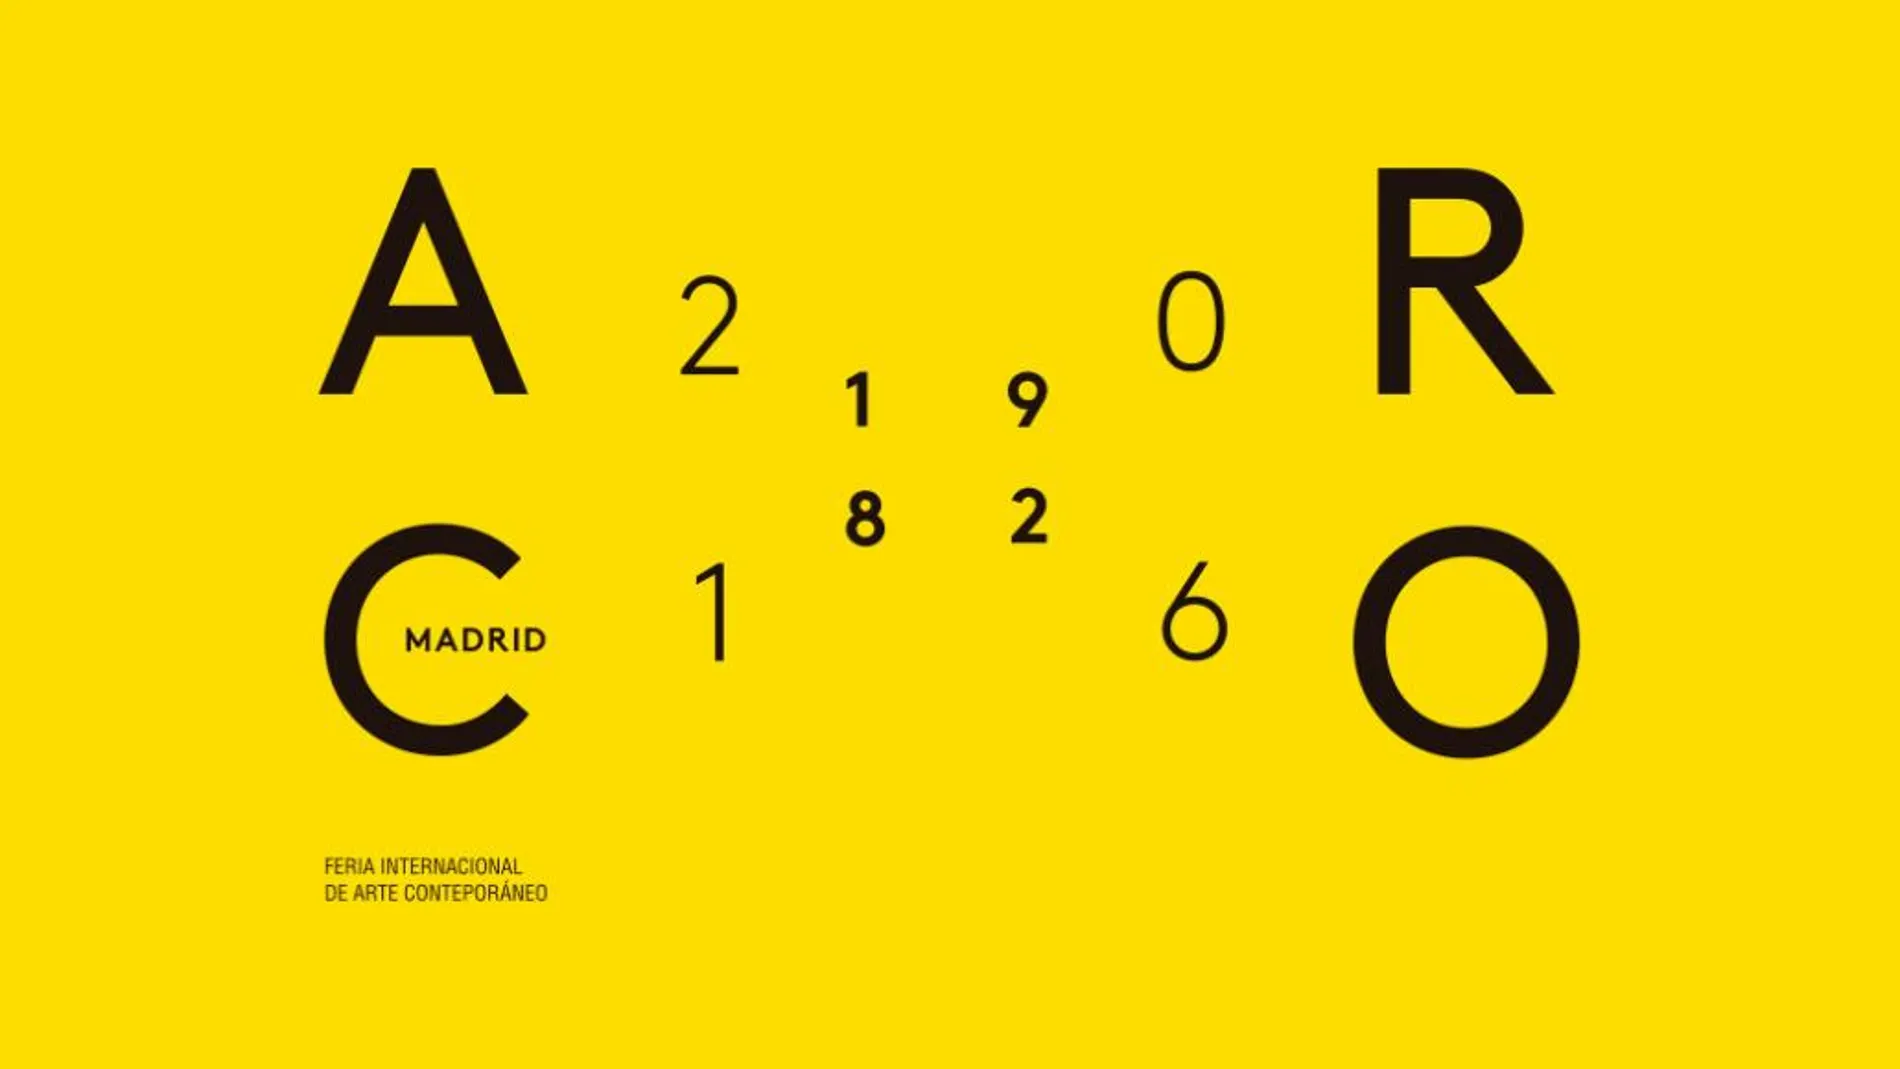 ARCO se celebraen Madrid entre el 24 y el 28 de febrero.